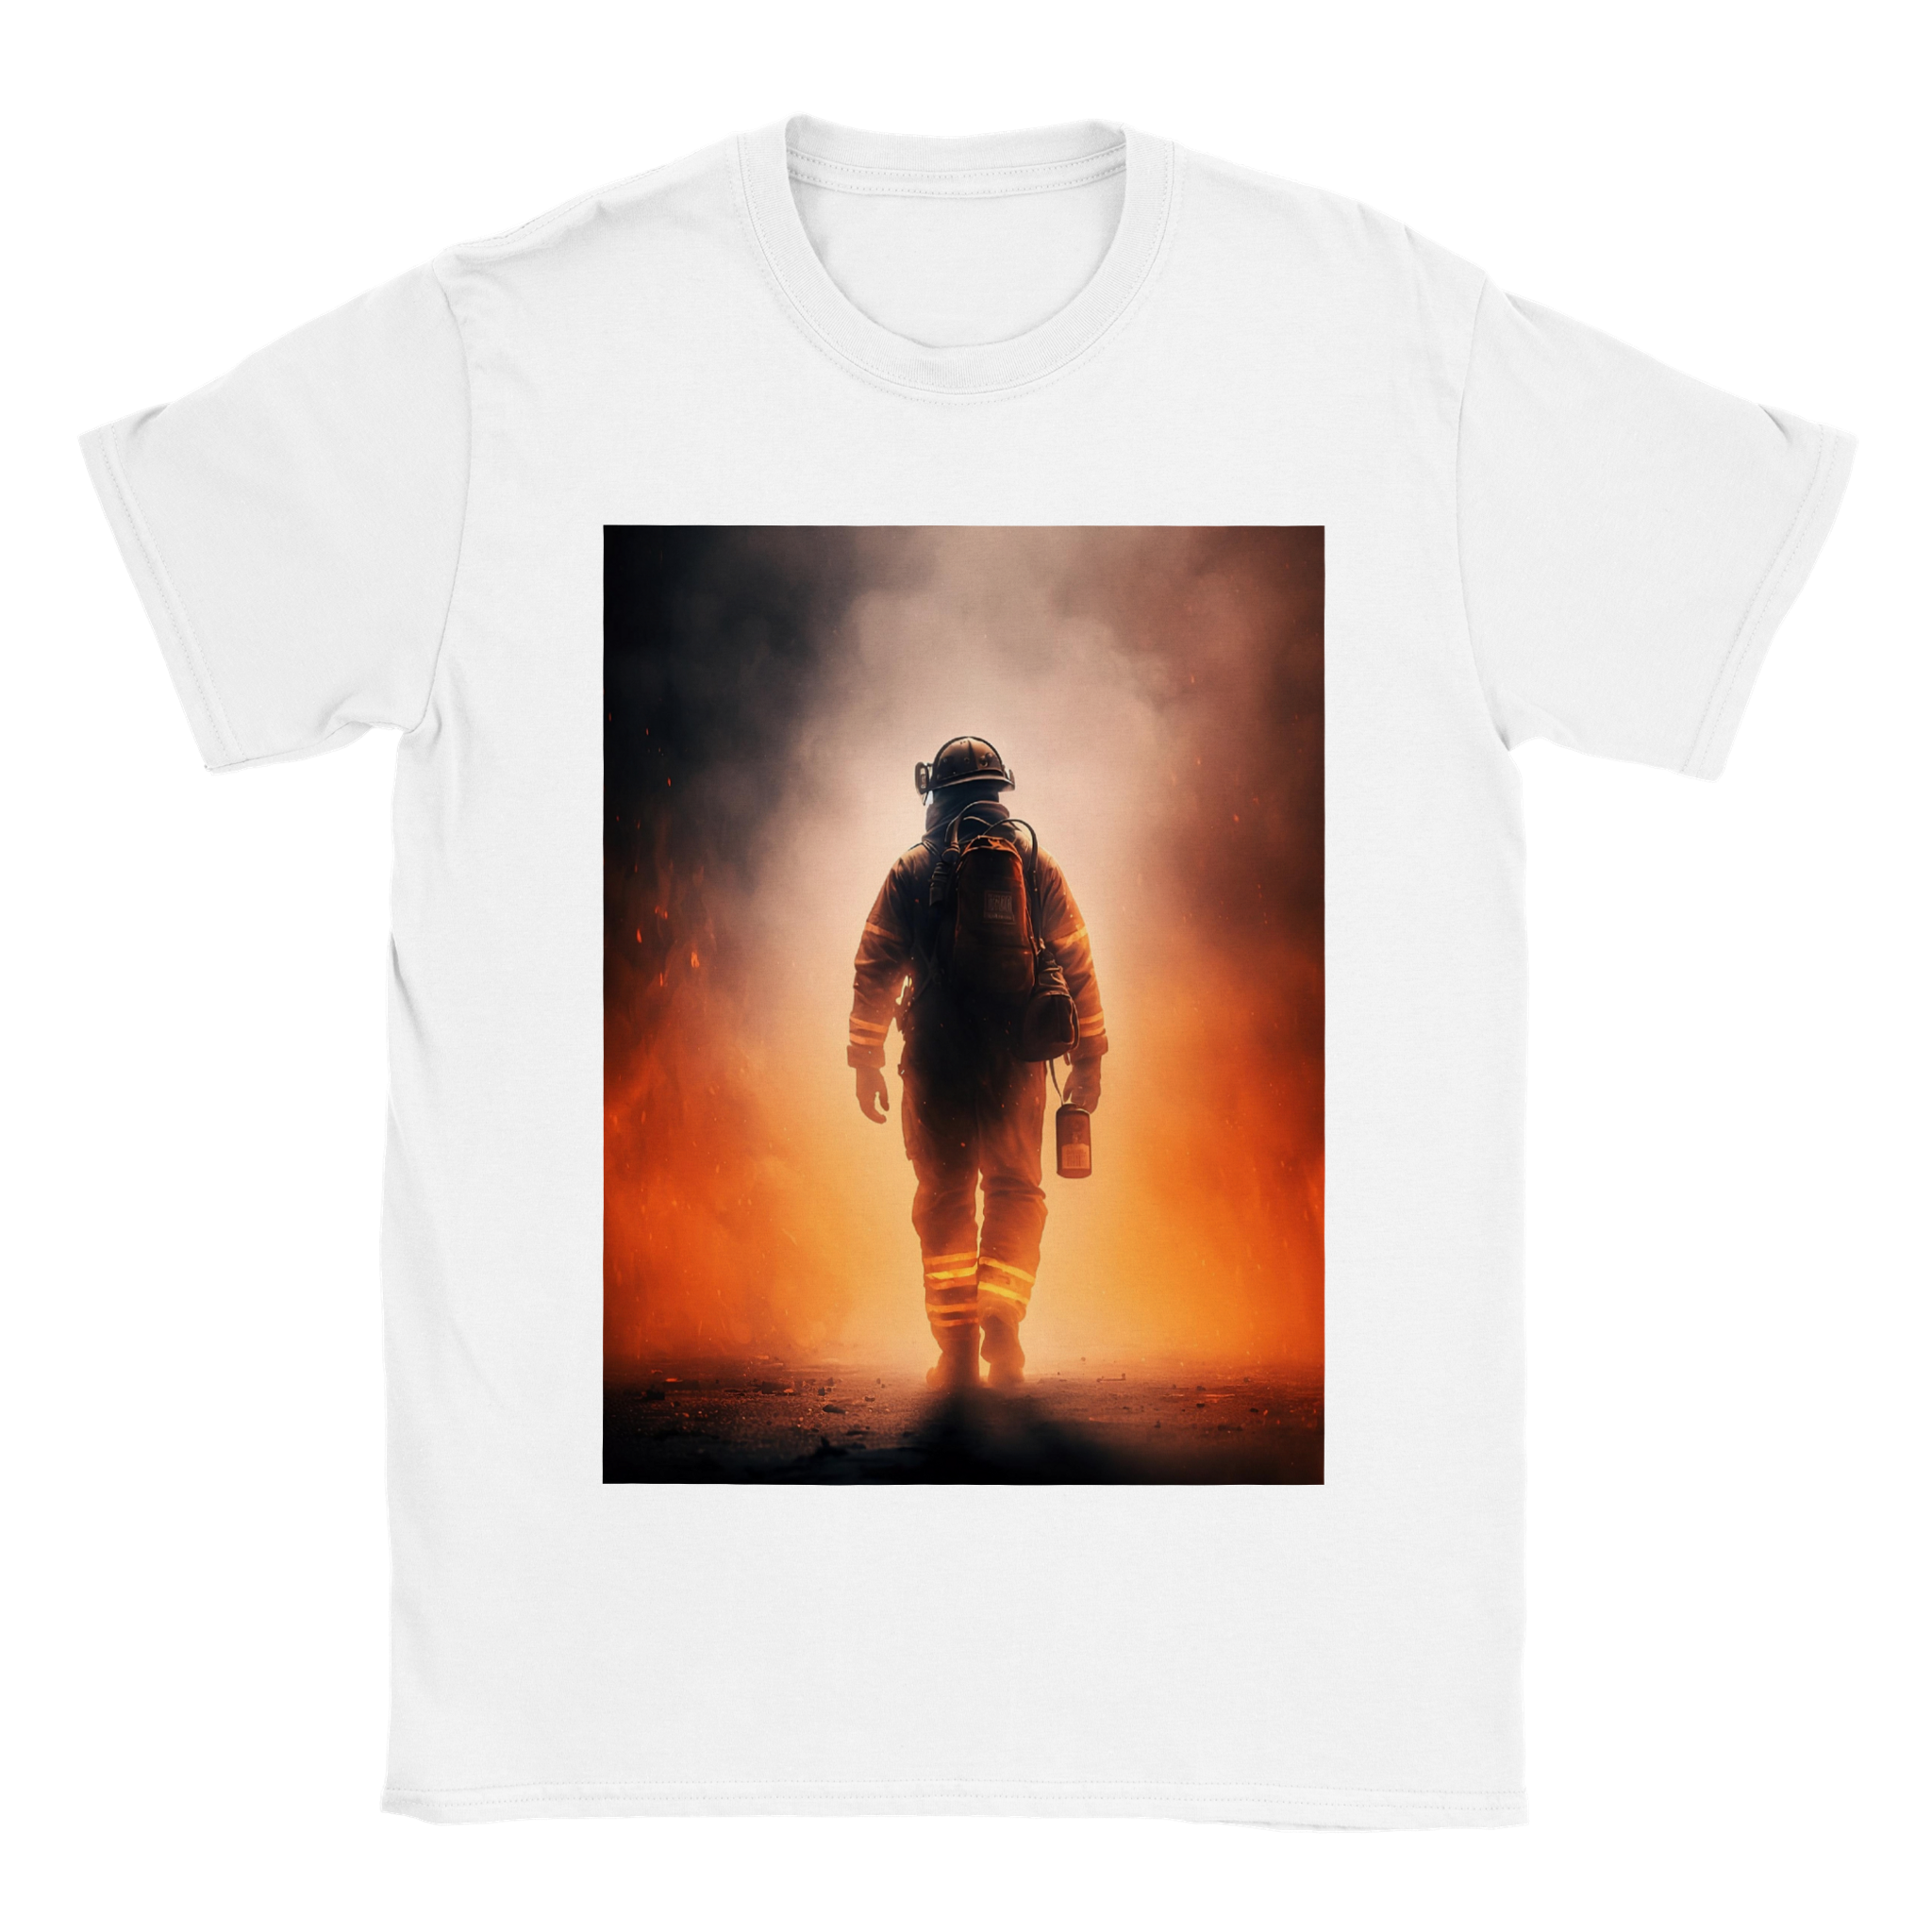 Firefighter unisex t-shirt